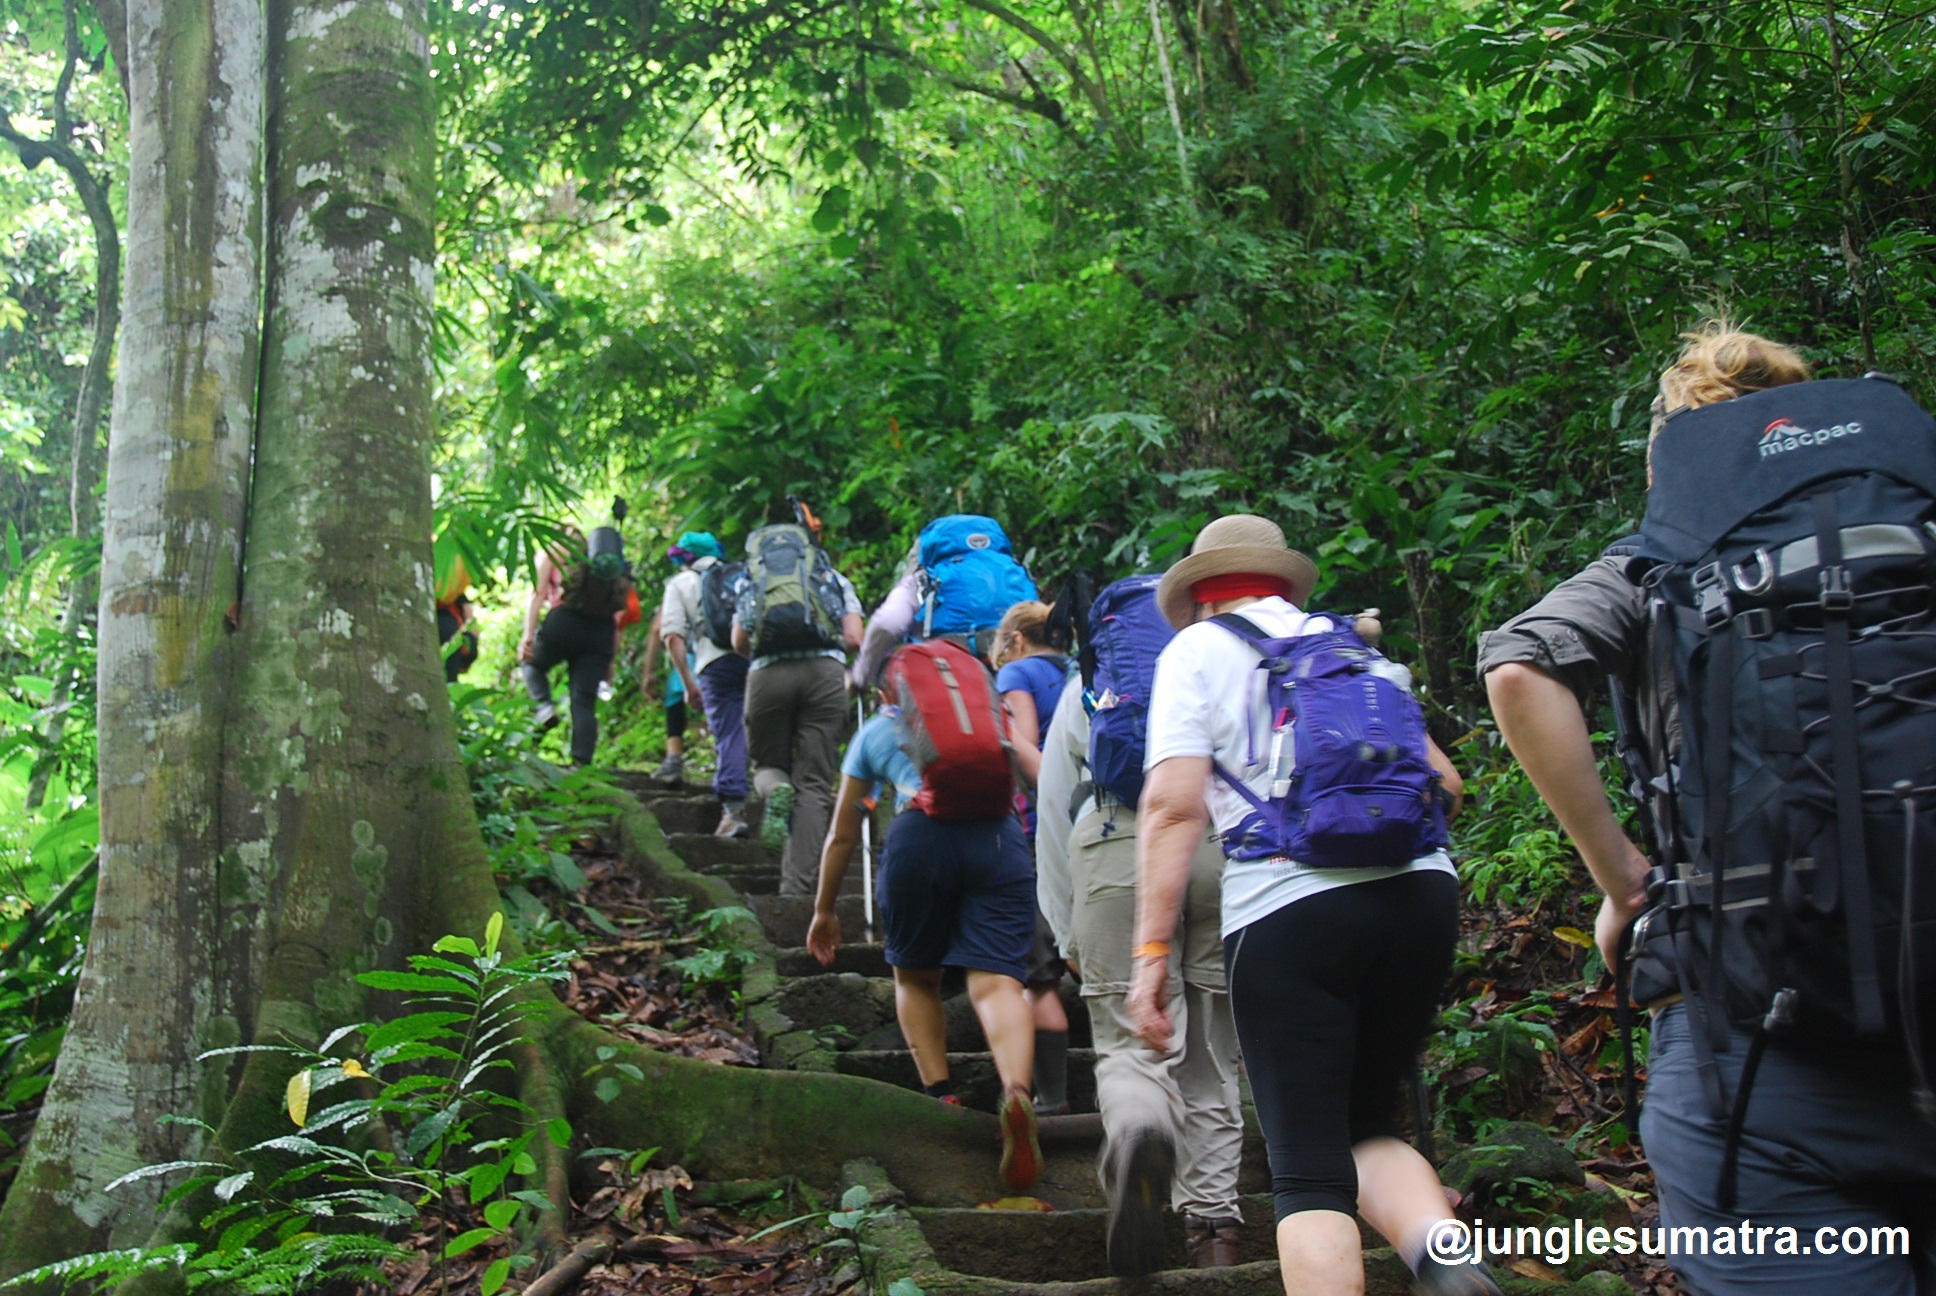 Jungle Sumatra - Bukit Lawang, Expedition, Jungle, Holiday, Travel ...